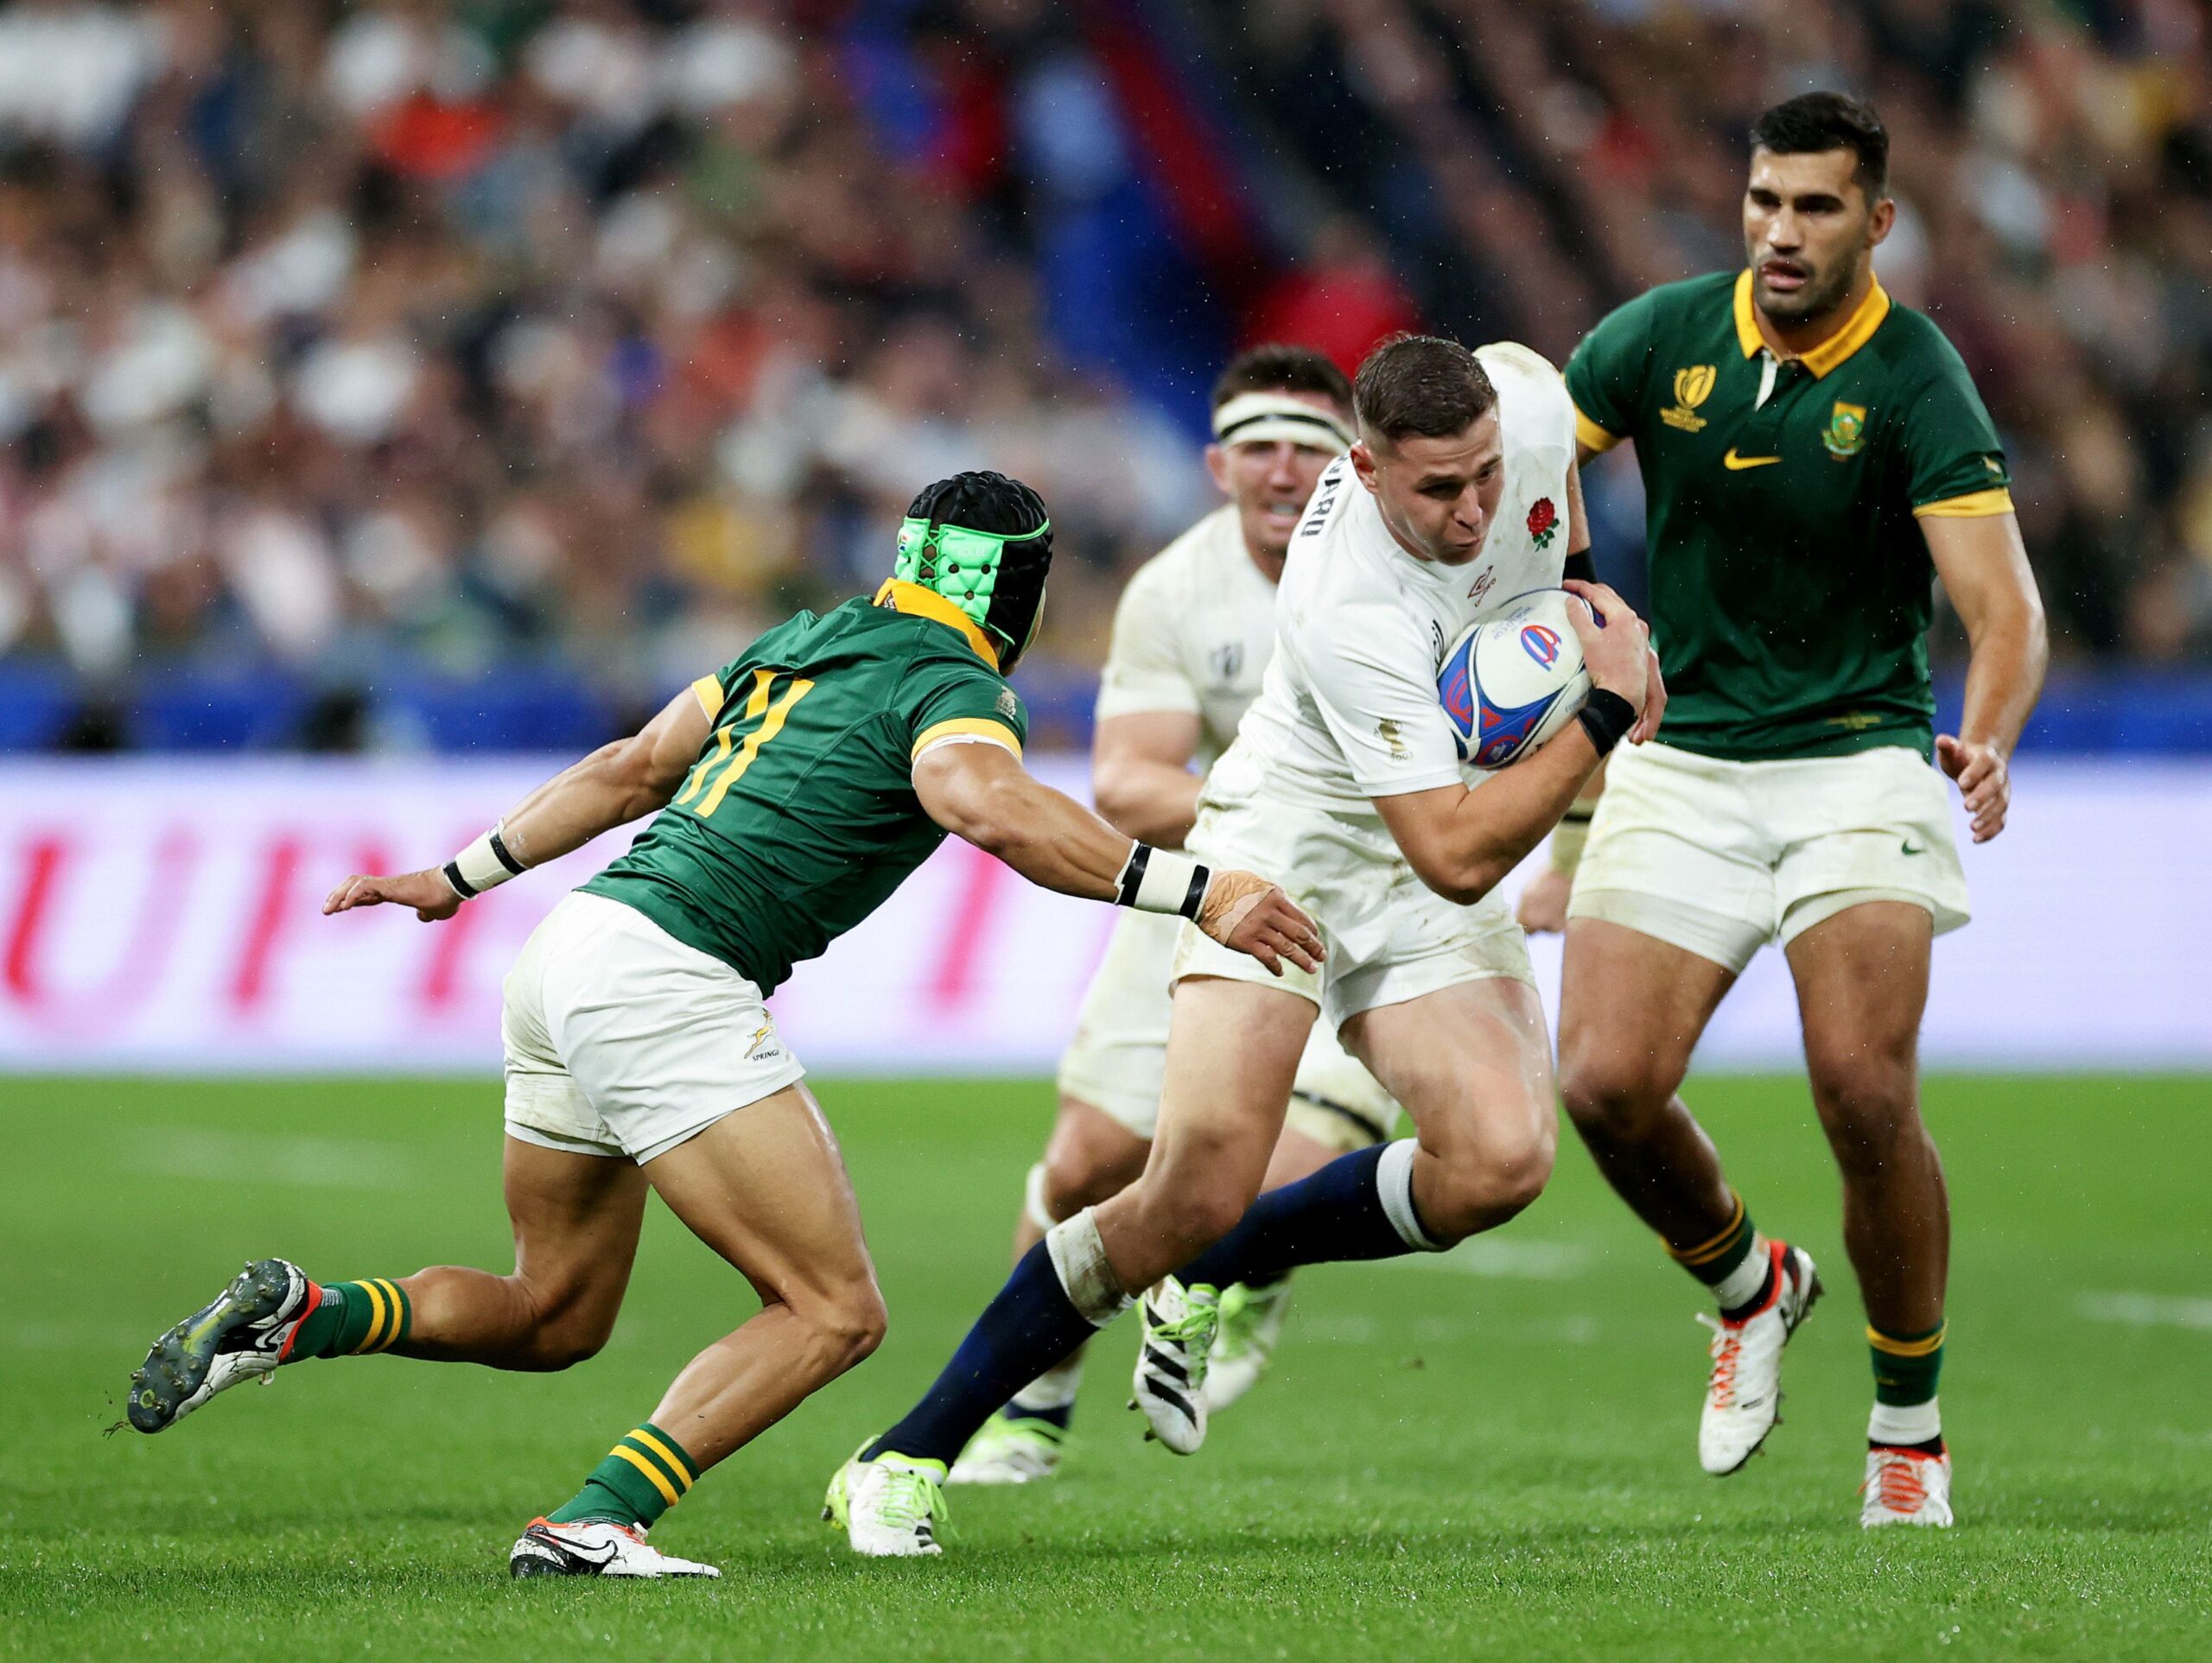 ДЕТАЉ СА ДРУГОГ ПОЛУФИНАЛА: ФРеди Стјуарт у продорупротив Јужне Африке: ФОТО: World Rugby/Getty Images